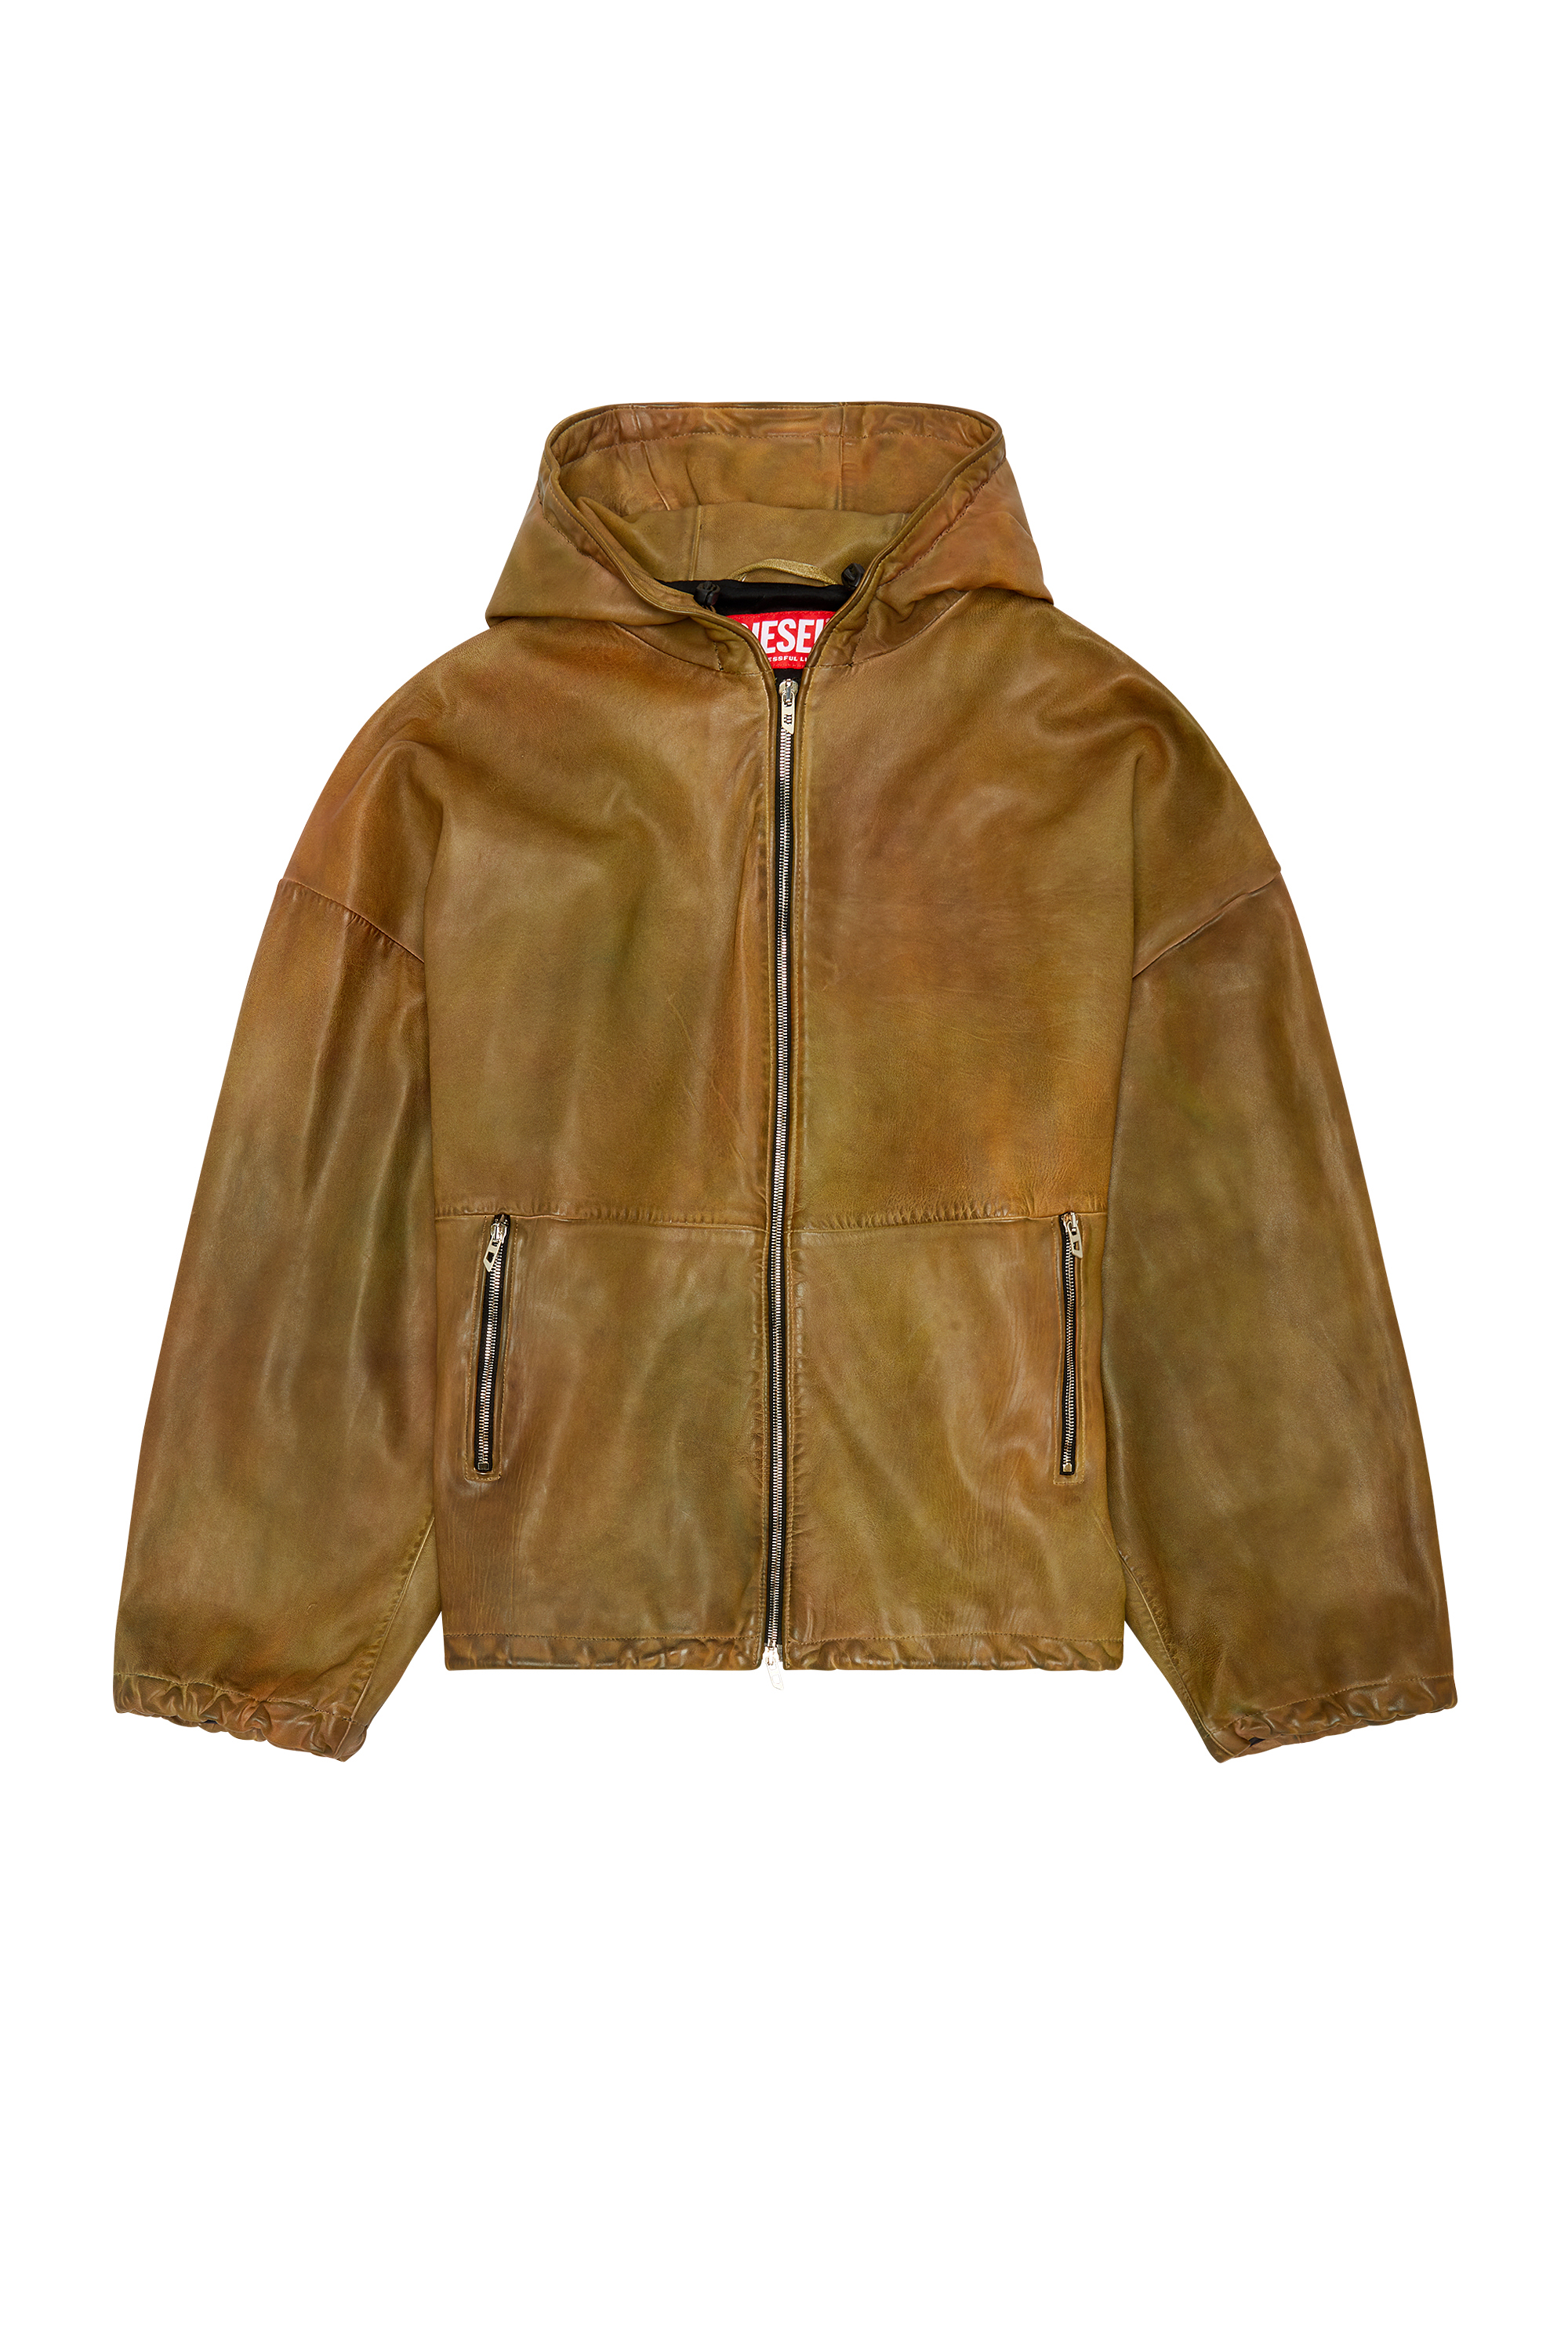 Diesel - L-VATEL-HOODY, Male Hooded leather jacket in Brown - Image 6